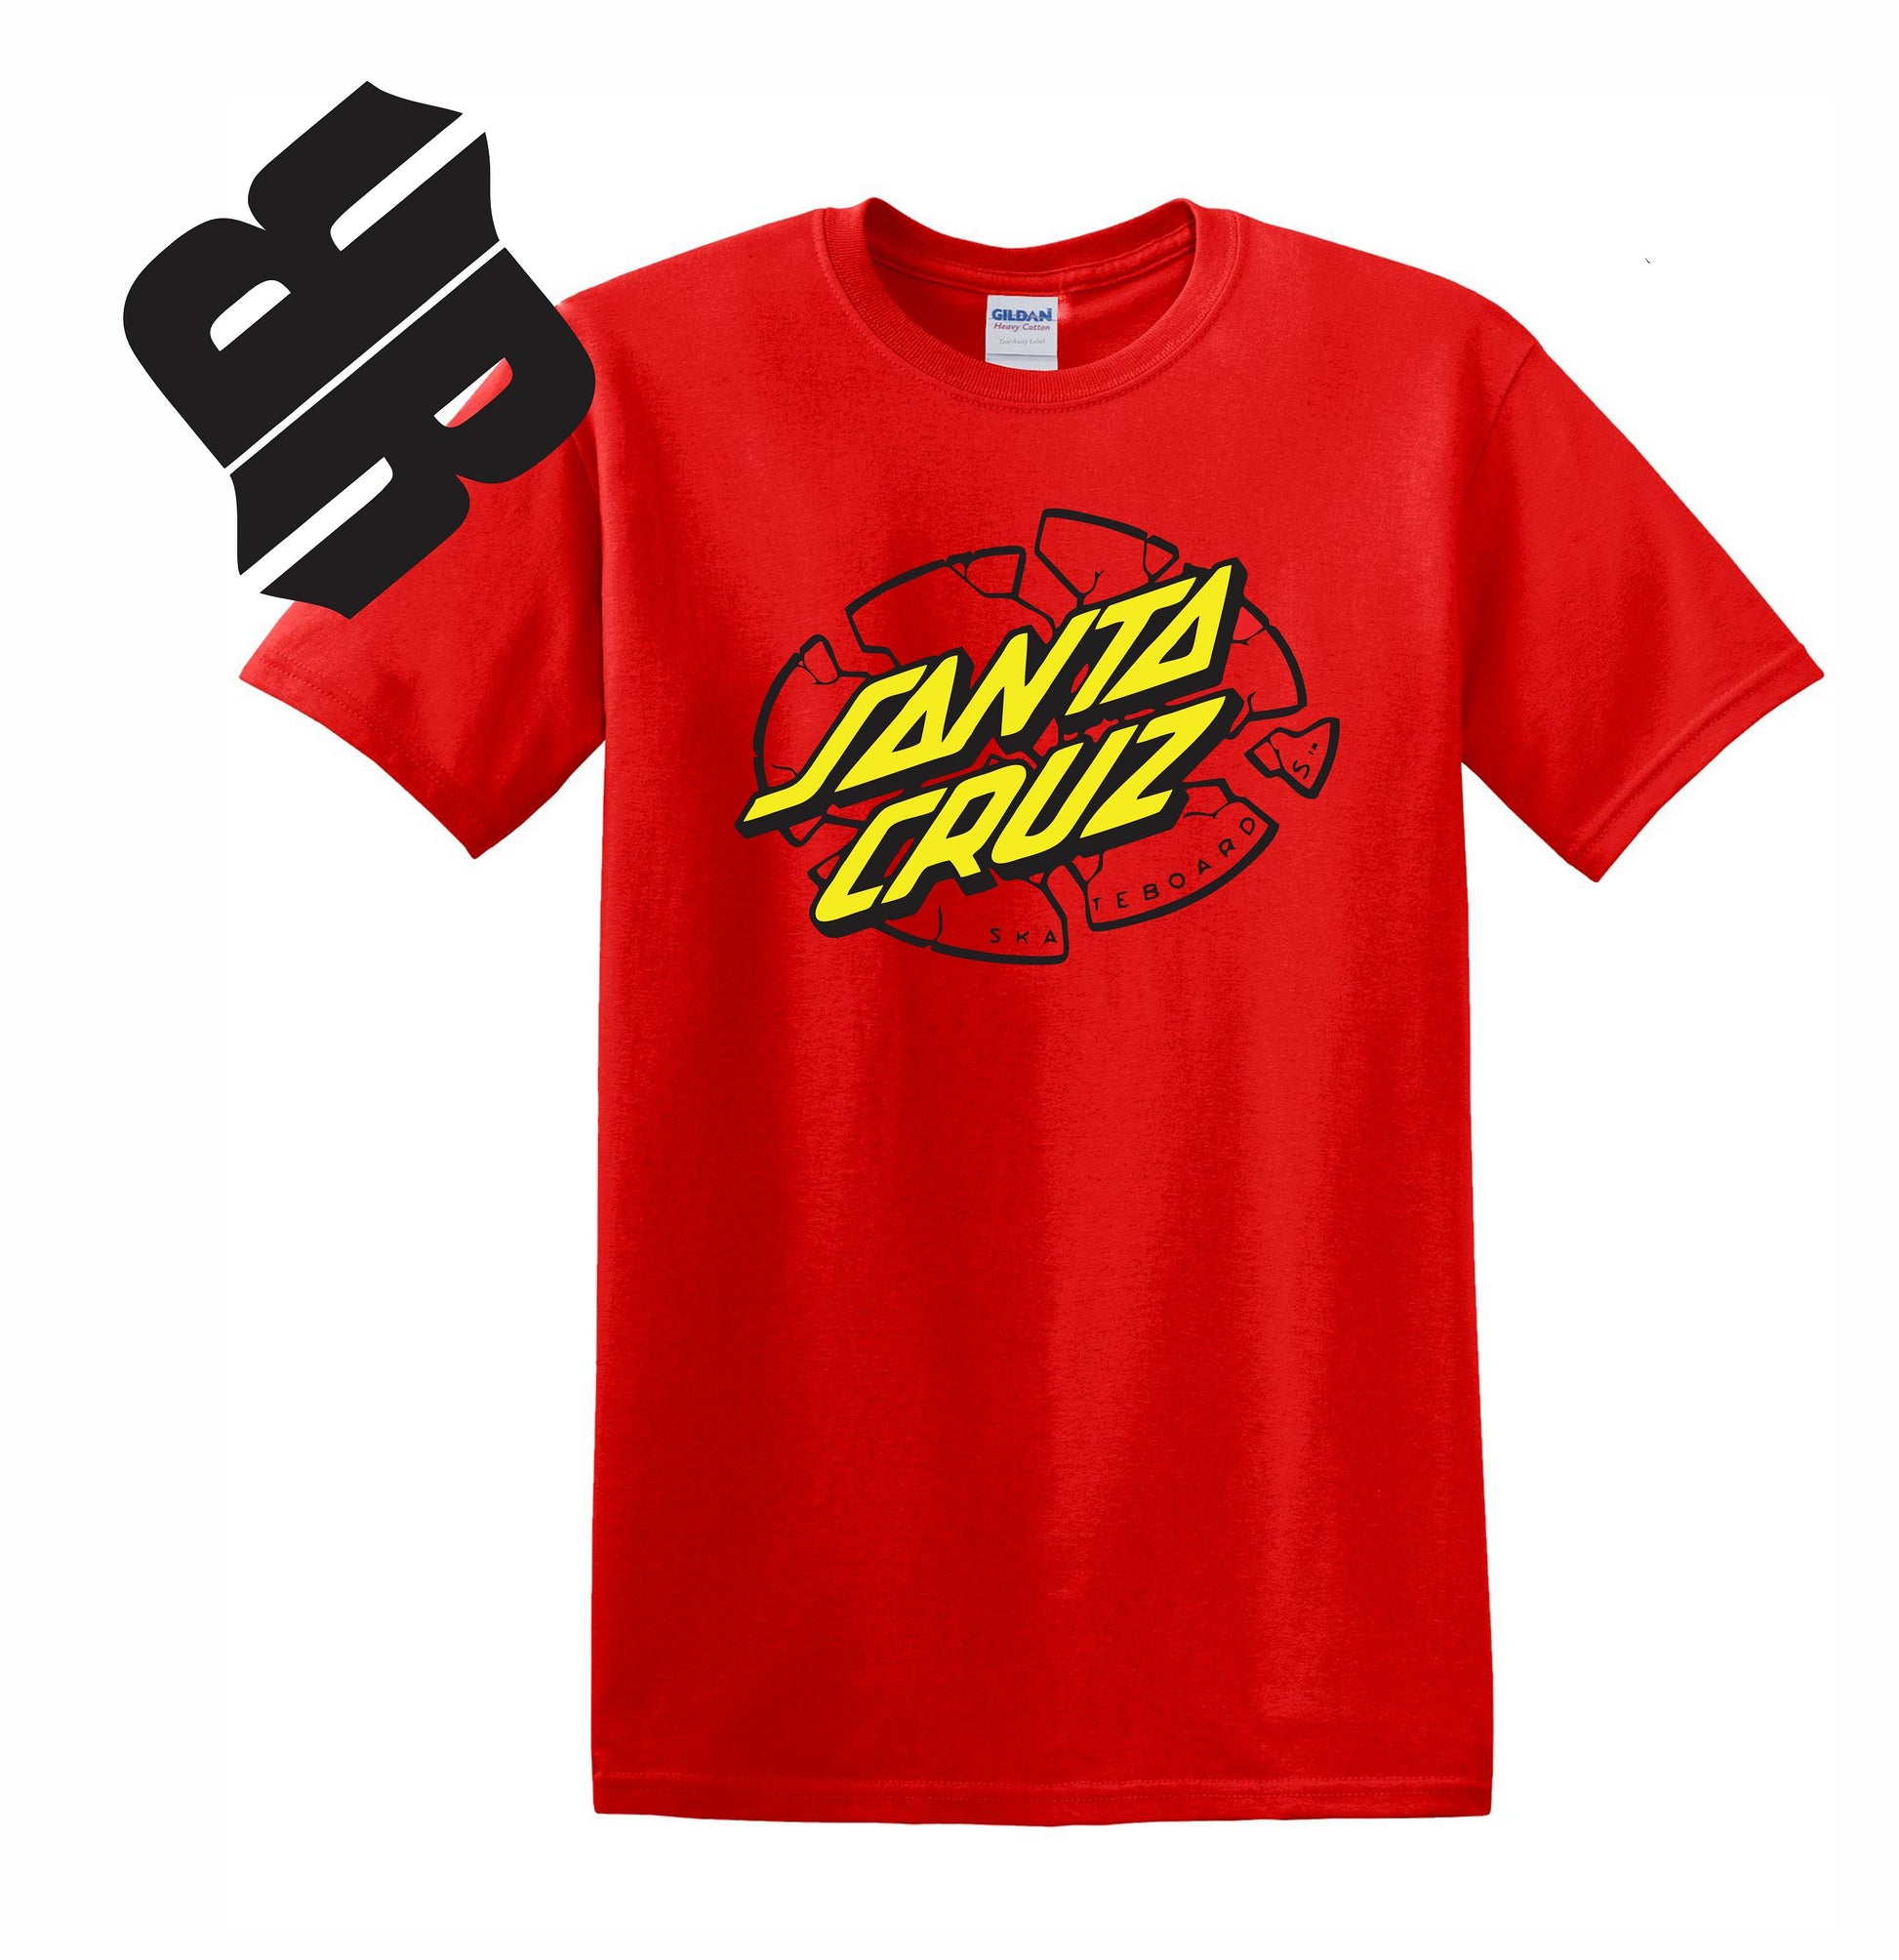 Skate Men's Shirt - Santa Cruz (Red) - MYSTYLEMYCLOTHING